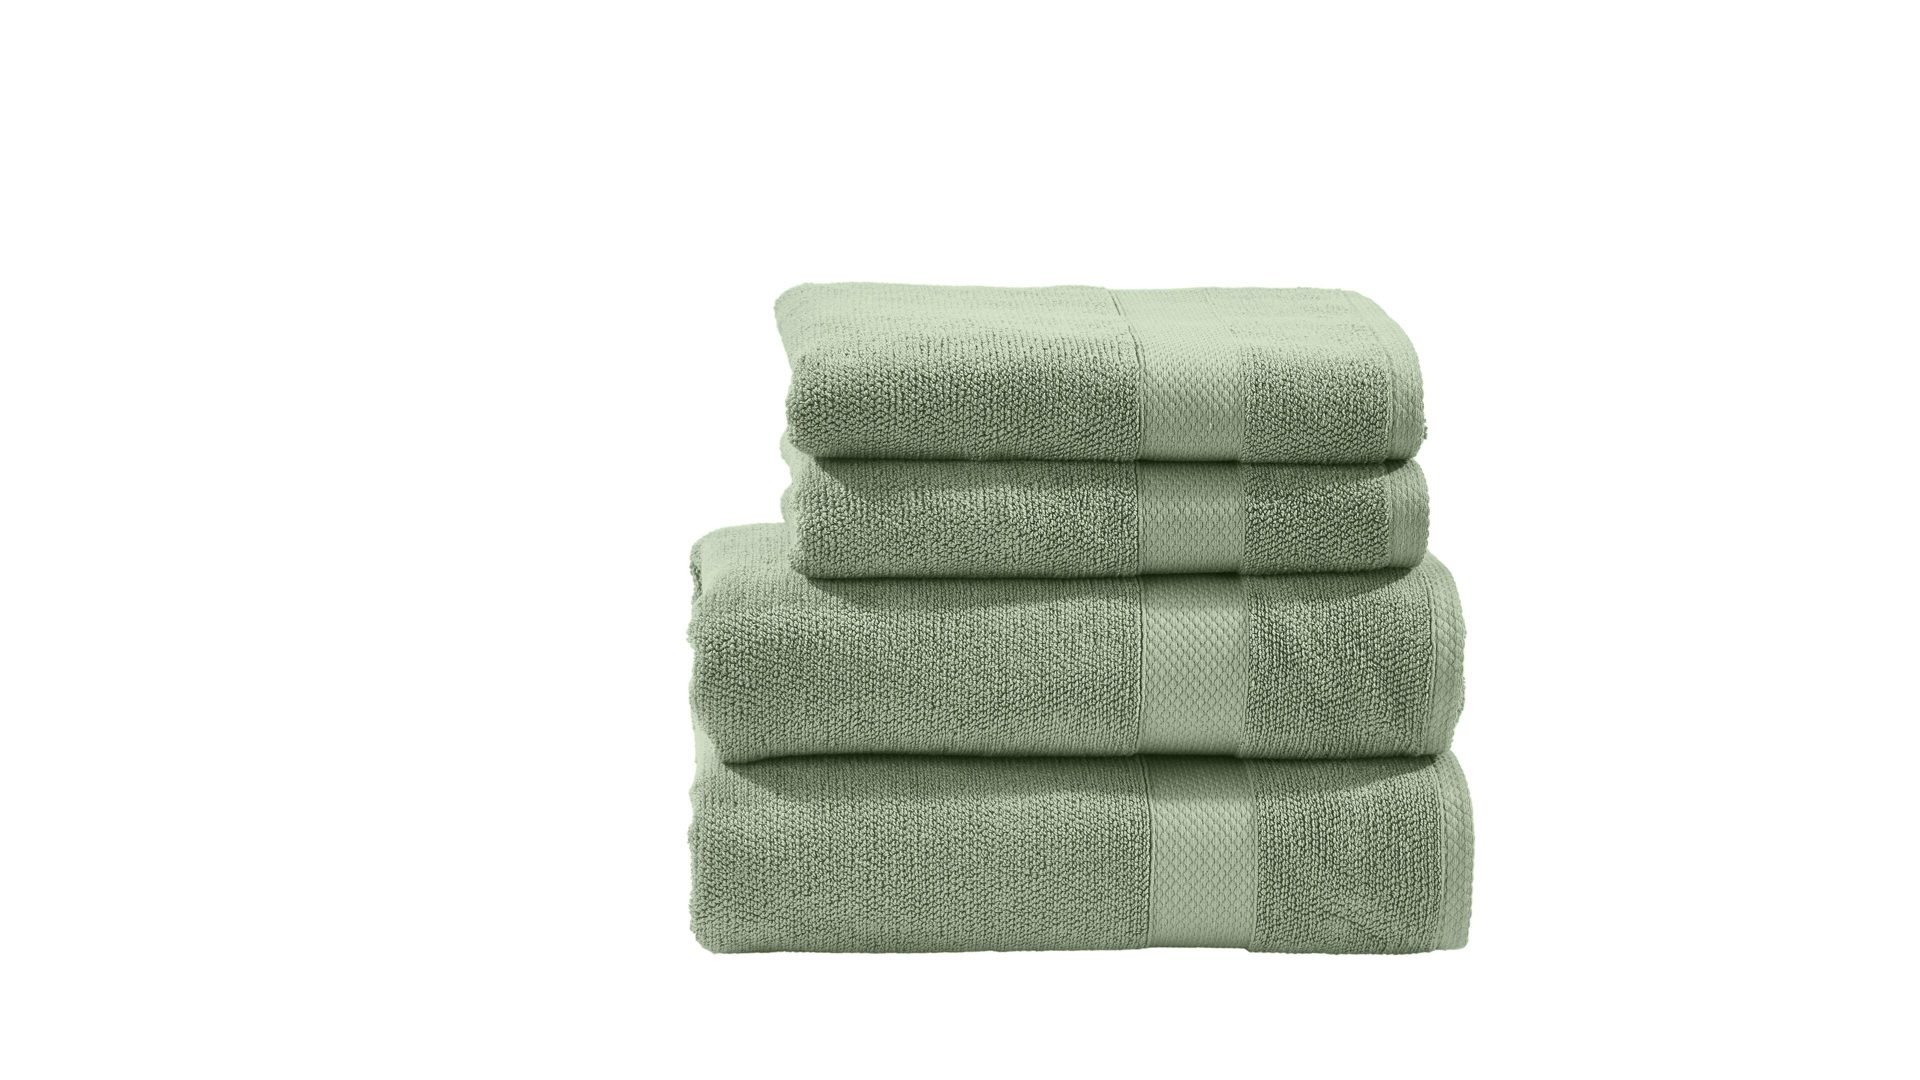 Handtuch-Set Done® by karabel home company aus Stoff in Grün DONE® Handtuch-Set Deluxe für Ihre Heimtextilien eisbergfarbene Baumwolle – vierteilig